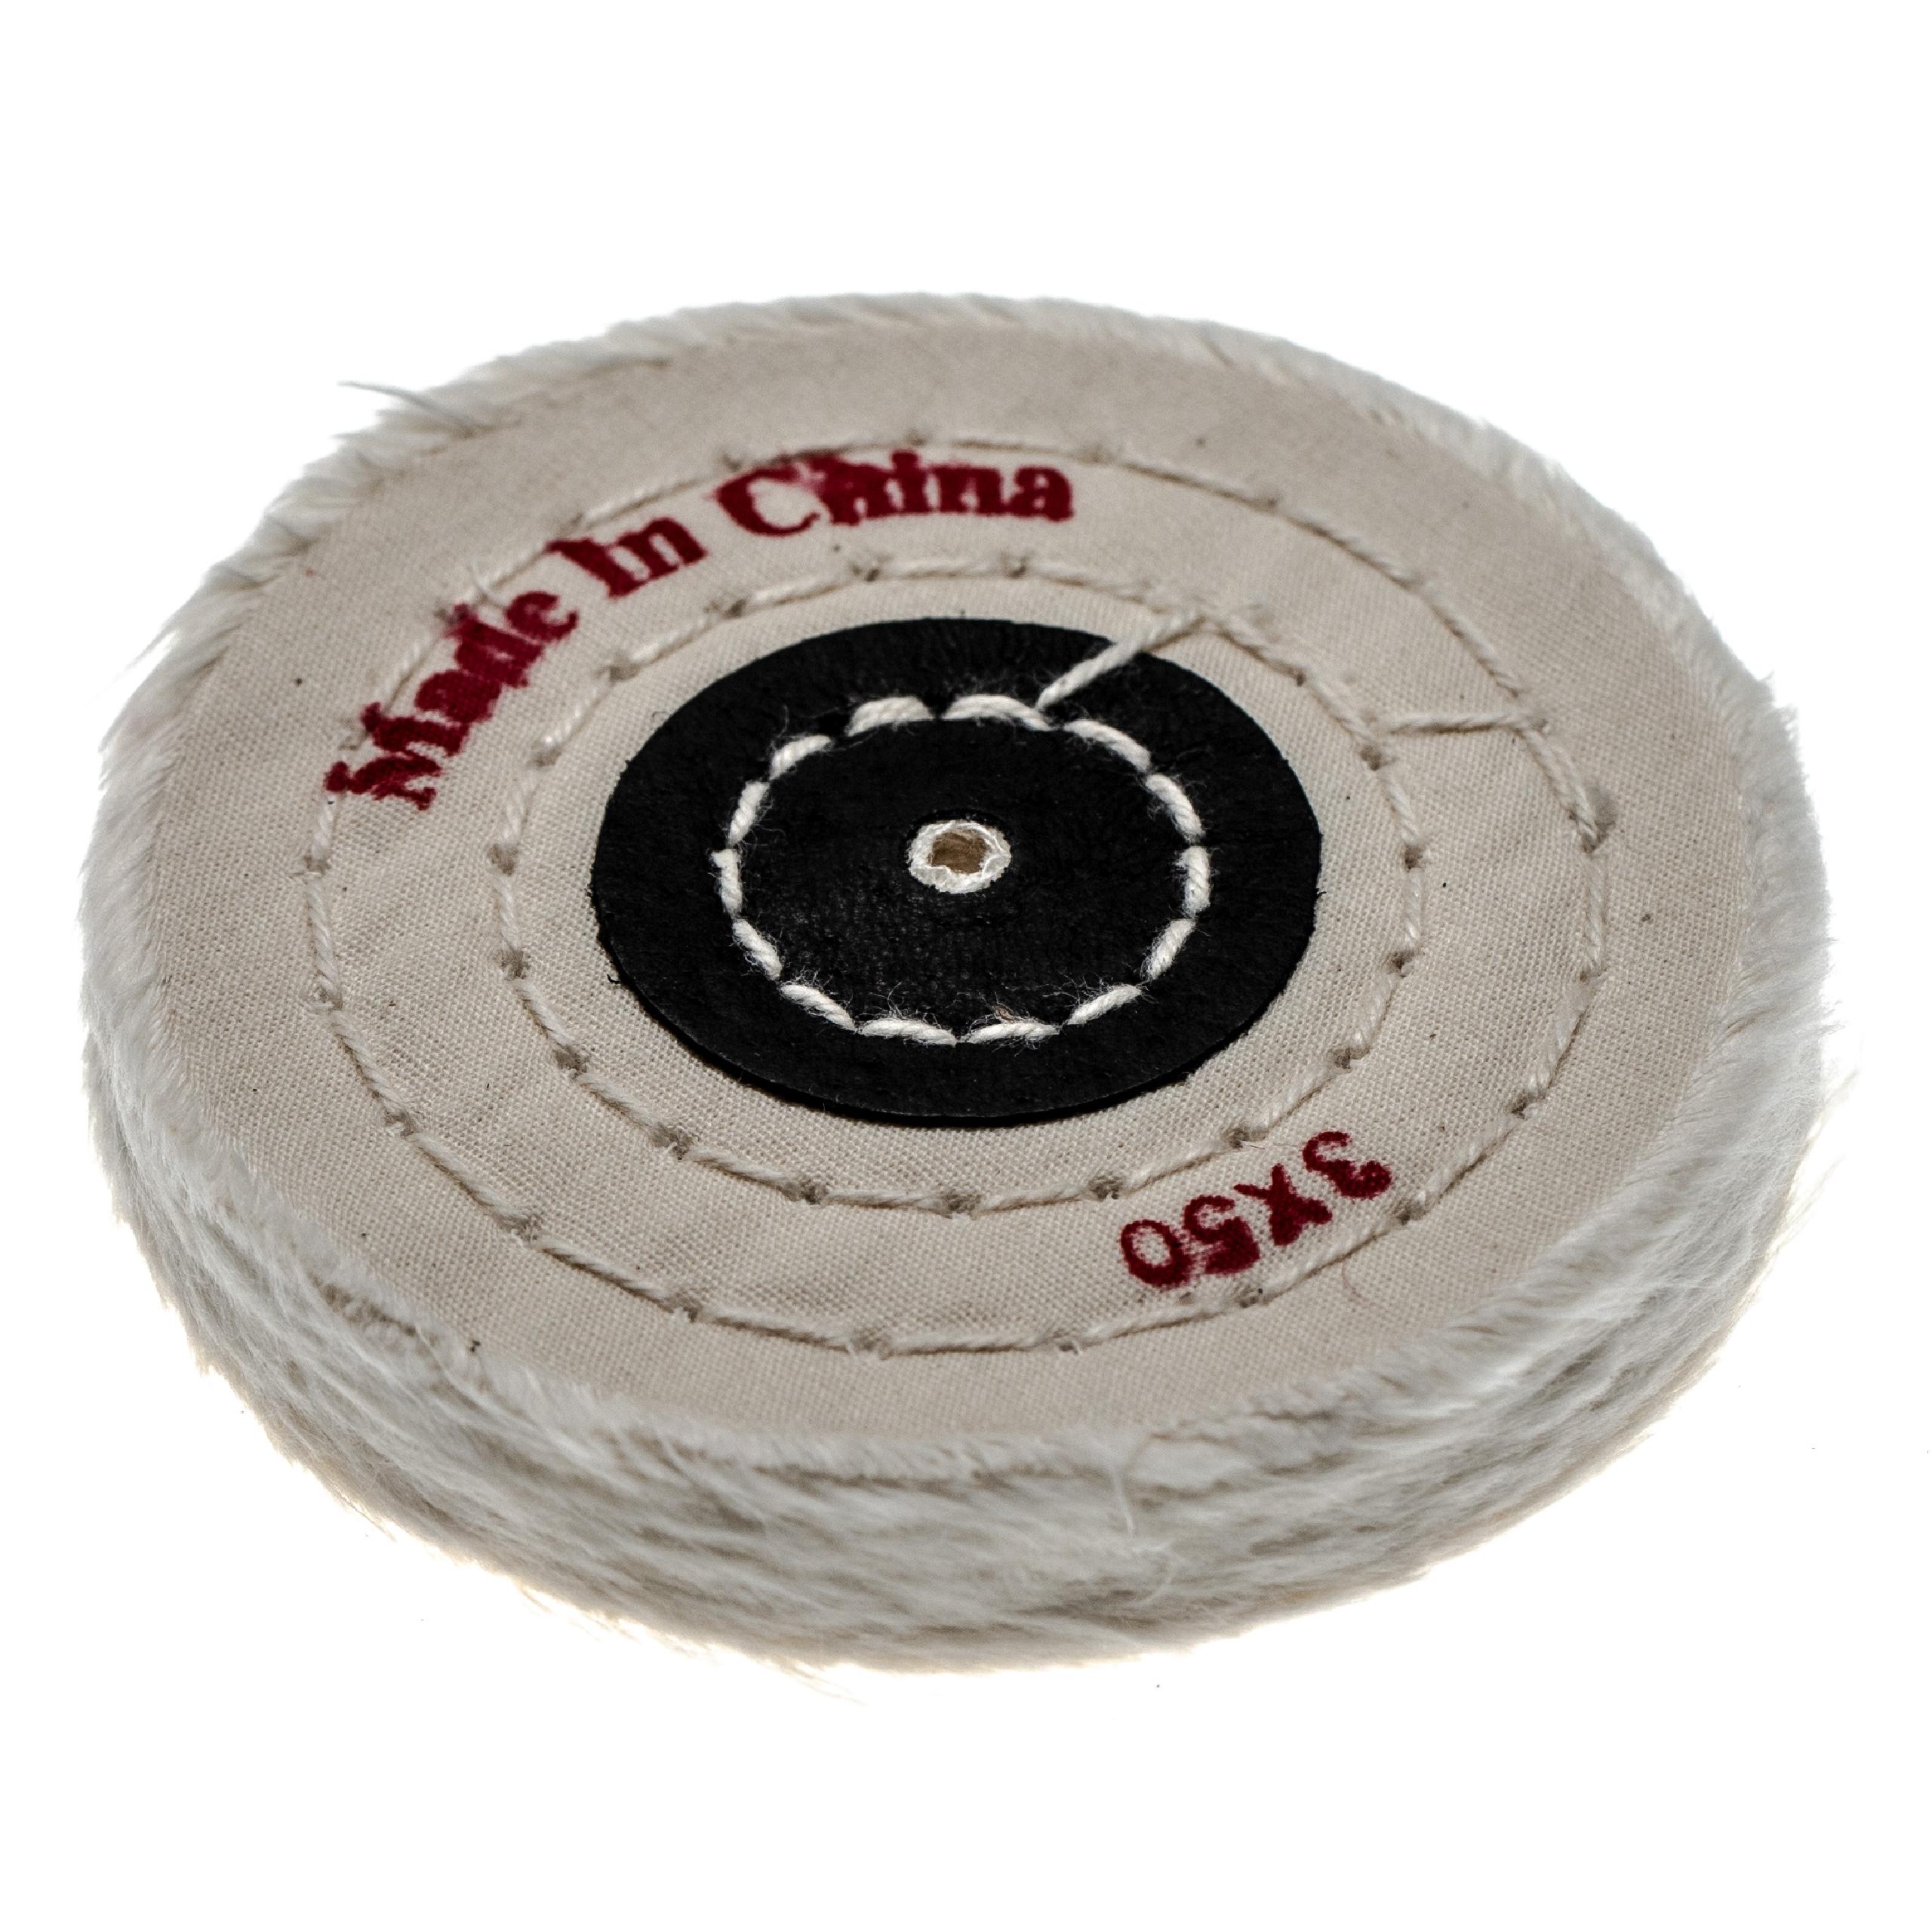 Disco para amoladoras angulares taladros, diámetro 7,5 cm, crema